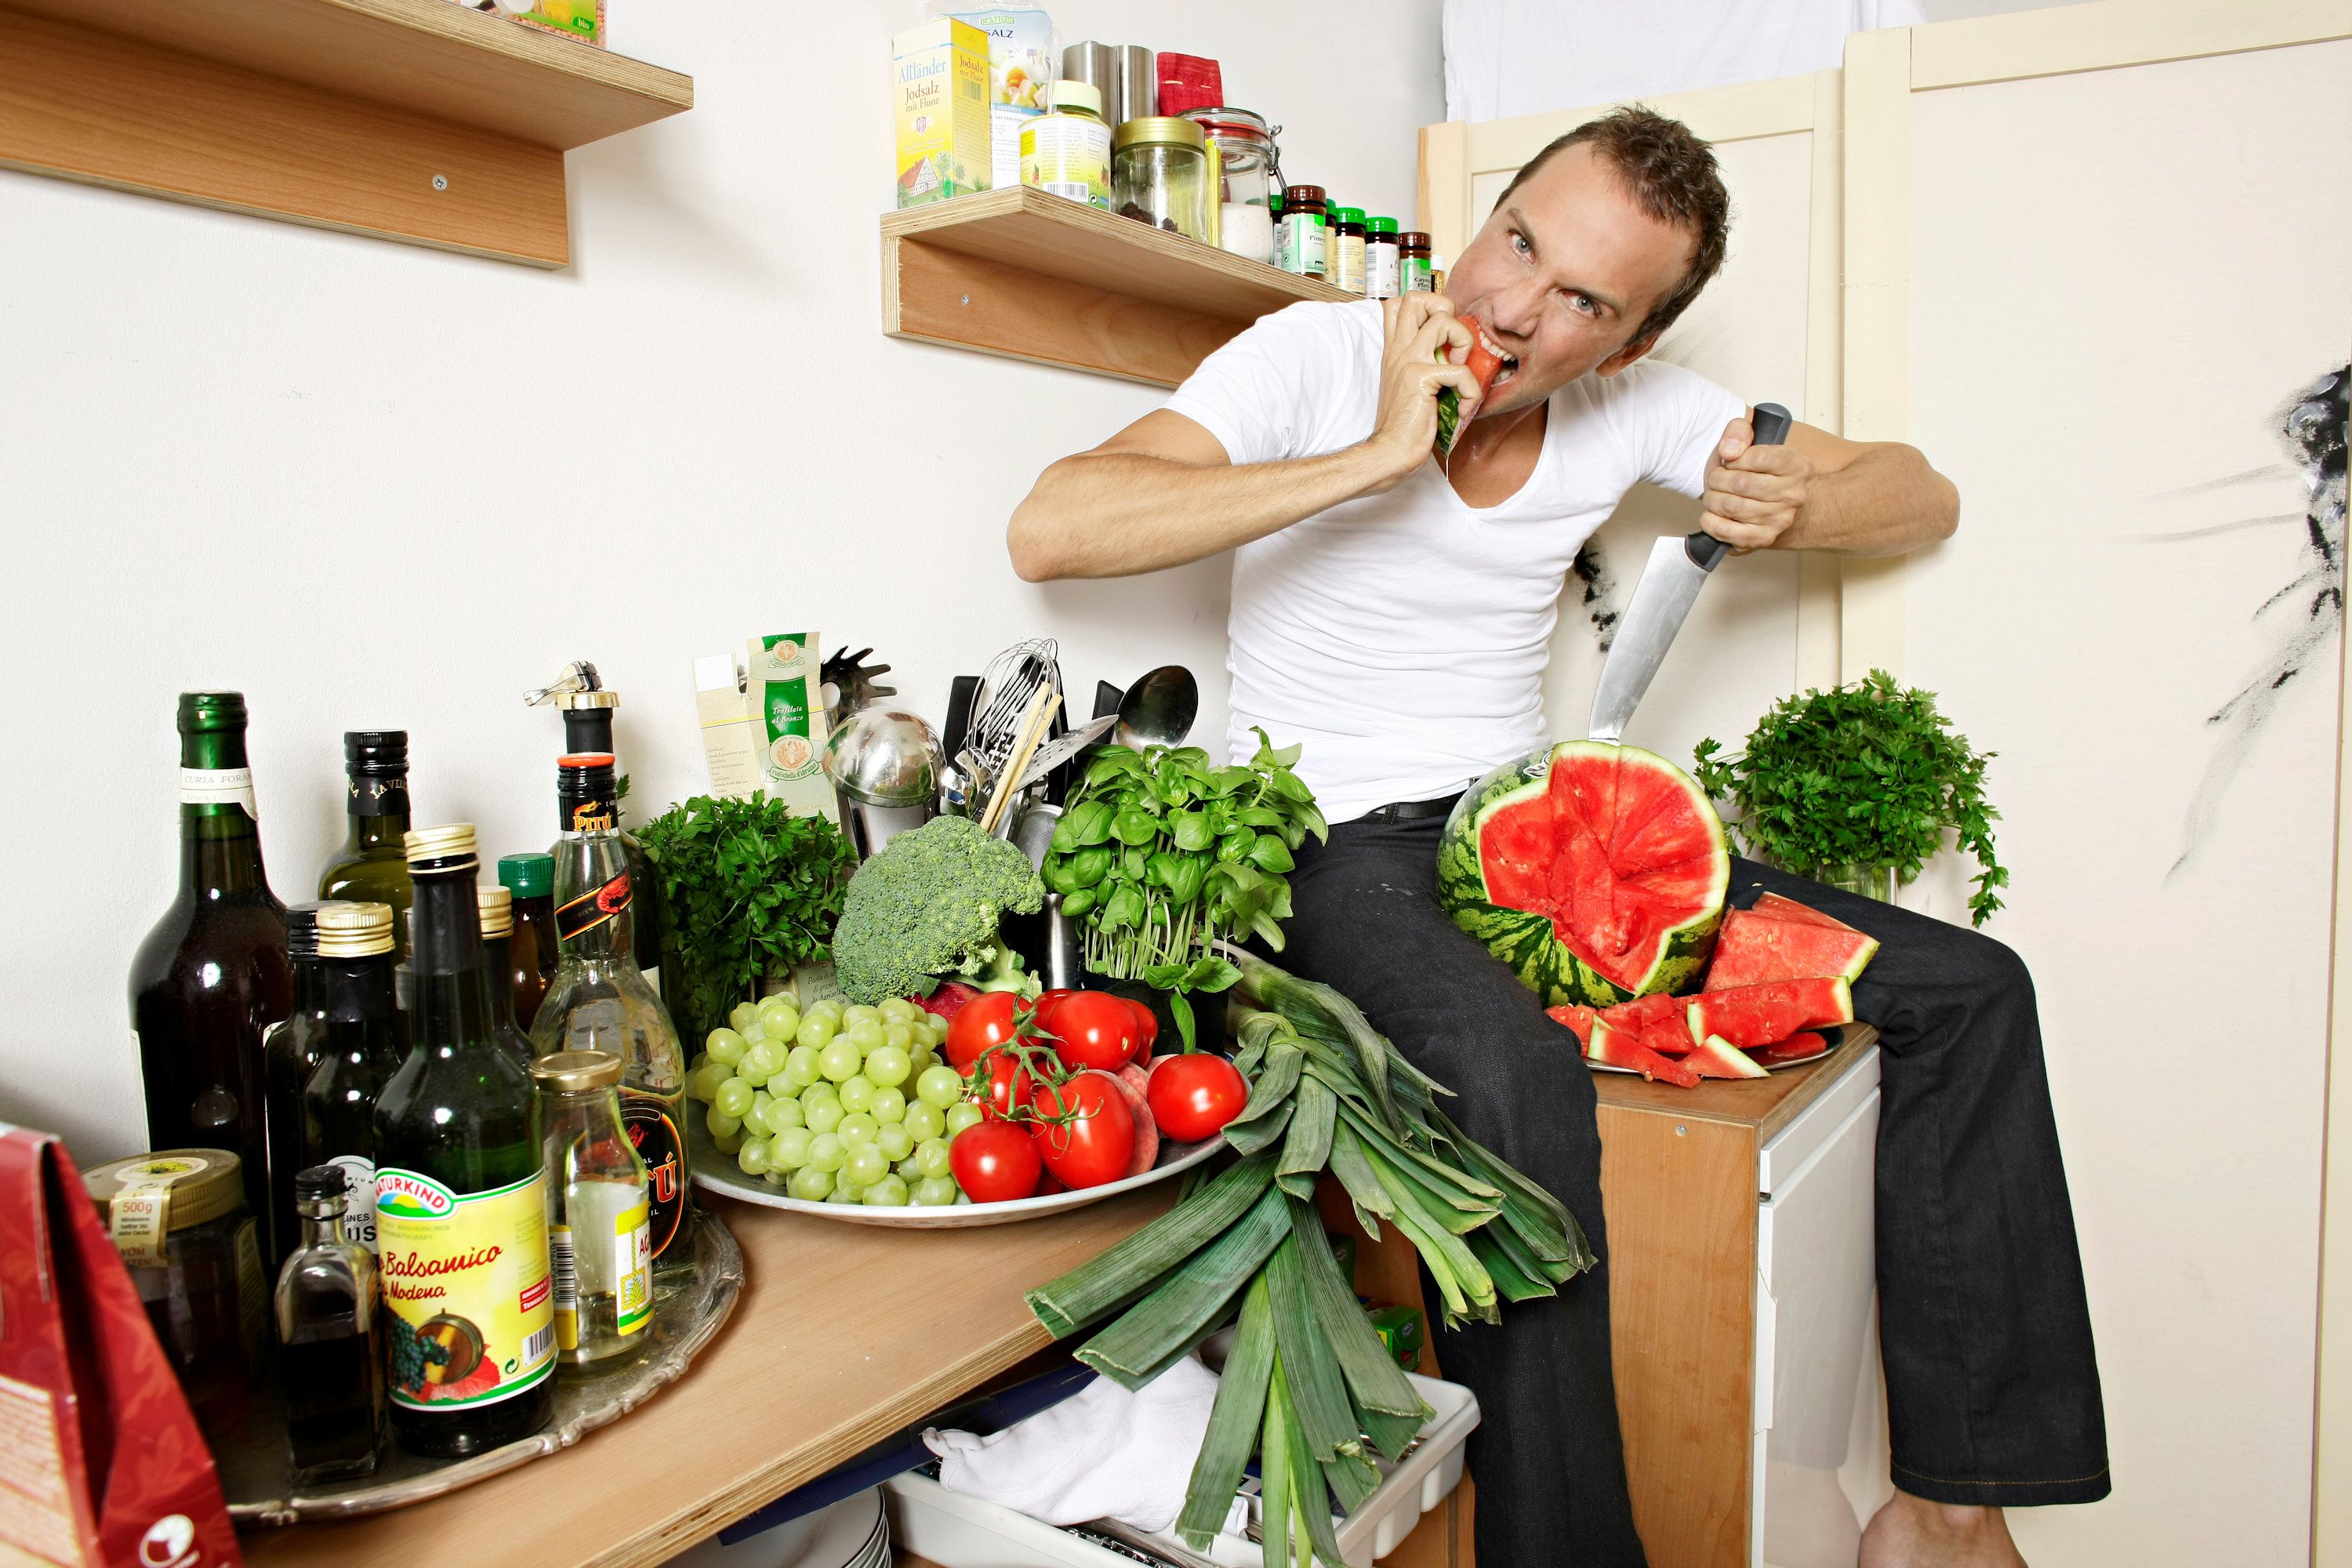 Muž sedí na kuchyňské lince s produkty a potravinami